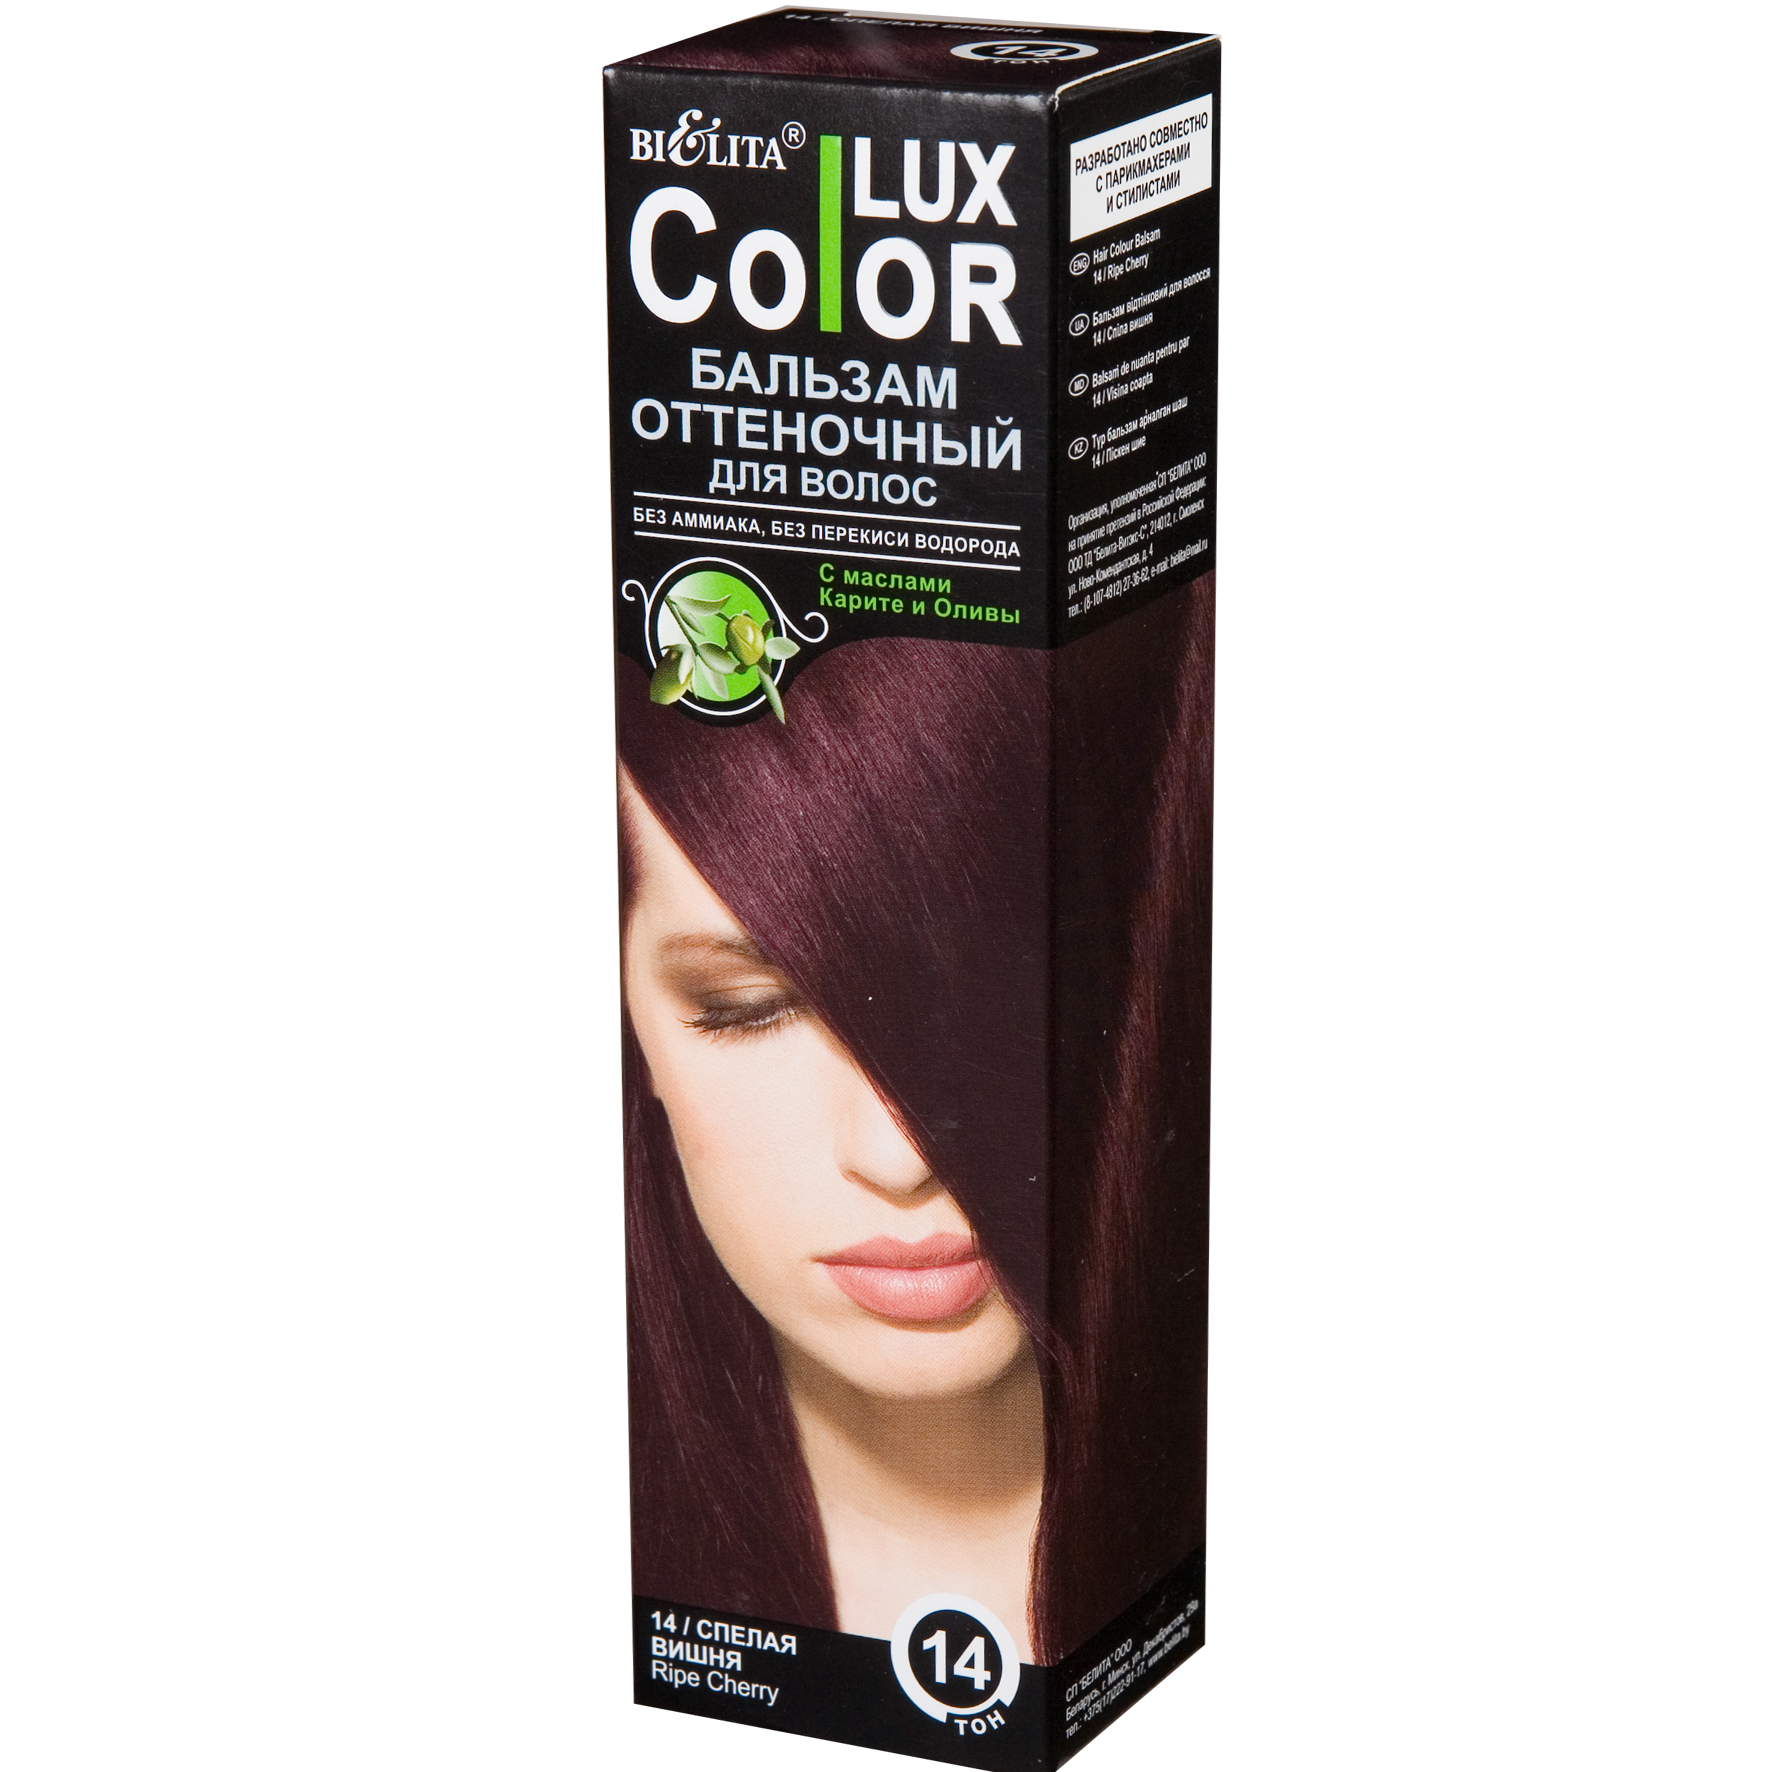 Оттеночный бальзам для медных волос. Бальзам Bielita Color Lux, тон 10 Медно-русый. Бальзам Bielita Color Lux, тон 14.1 махагон. Бальзам Bielita Color Lux, тон 11 каштан. Белита/Color Lux/ бальзам оттеночный для волос спелая вишня / тон 14 / 100 мл.